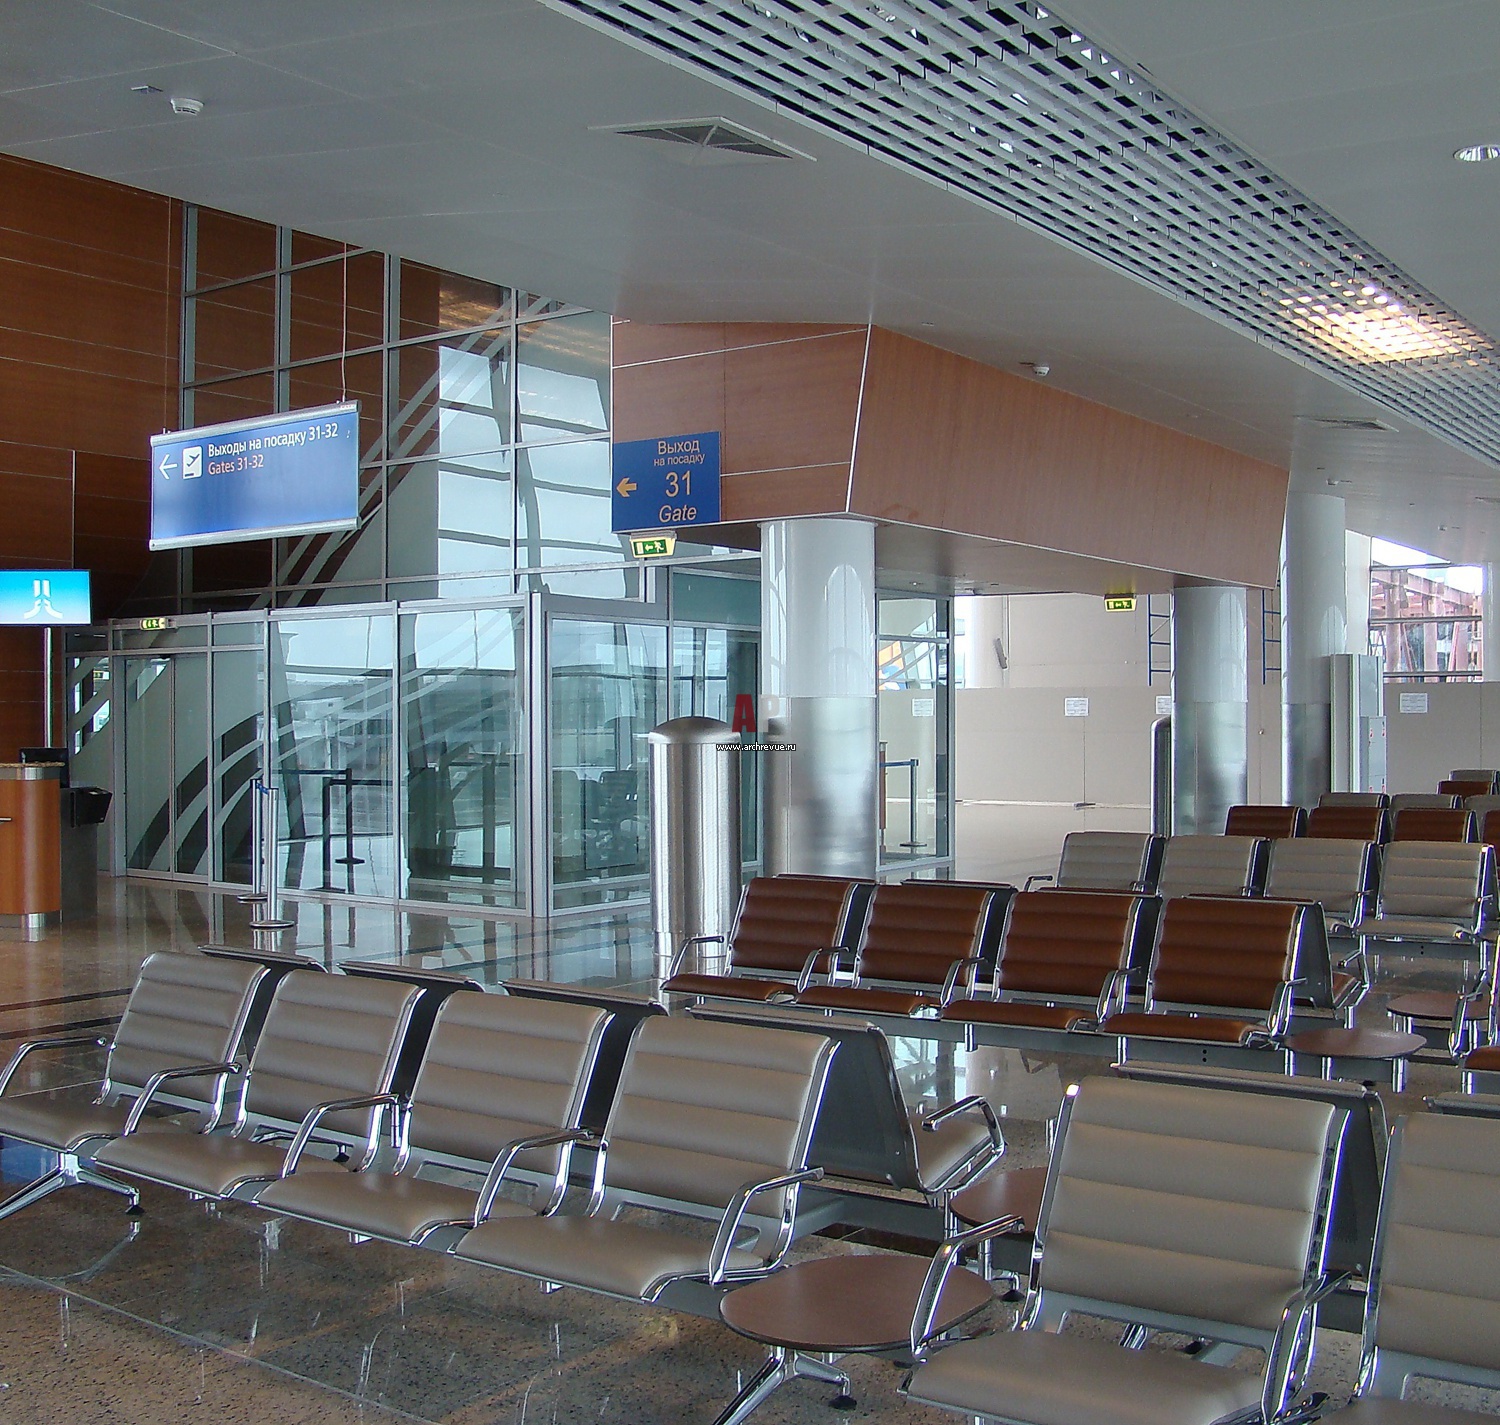 Зал вылета шереметьево. Шереметьево терминал д. Аэропорт Шереметьево терминал д внутри. Шереметьево зона вылета. Пассажирский терминал аэровокзального комплекса «Шереметьево-3».